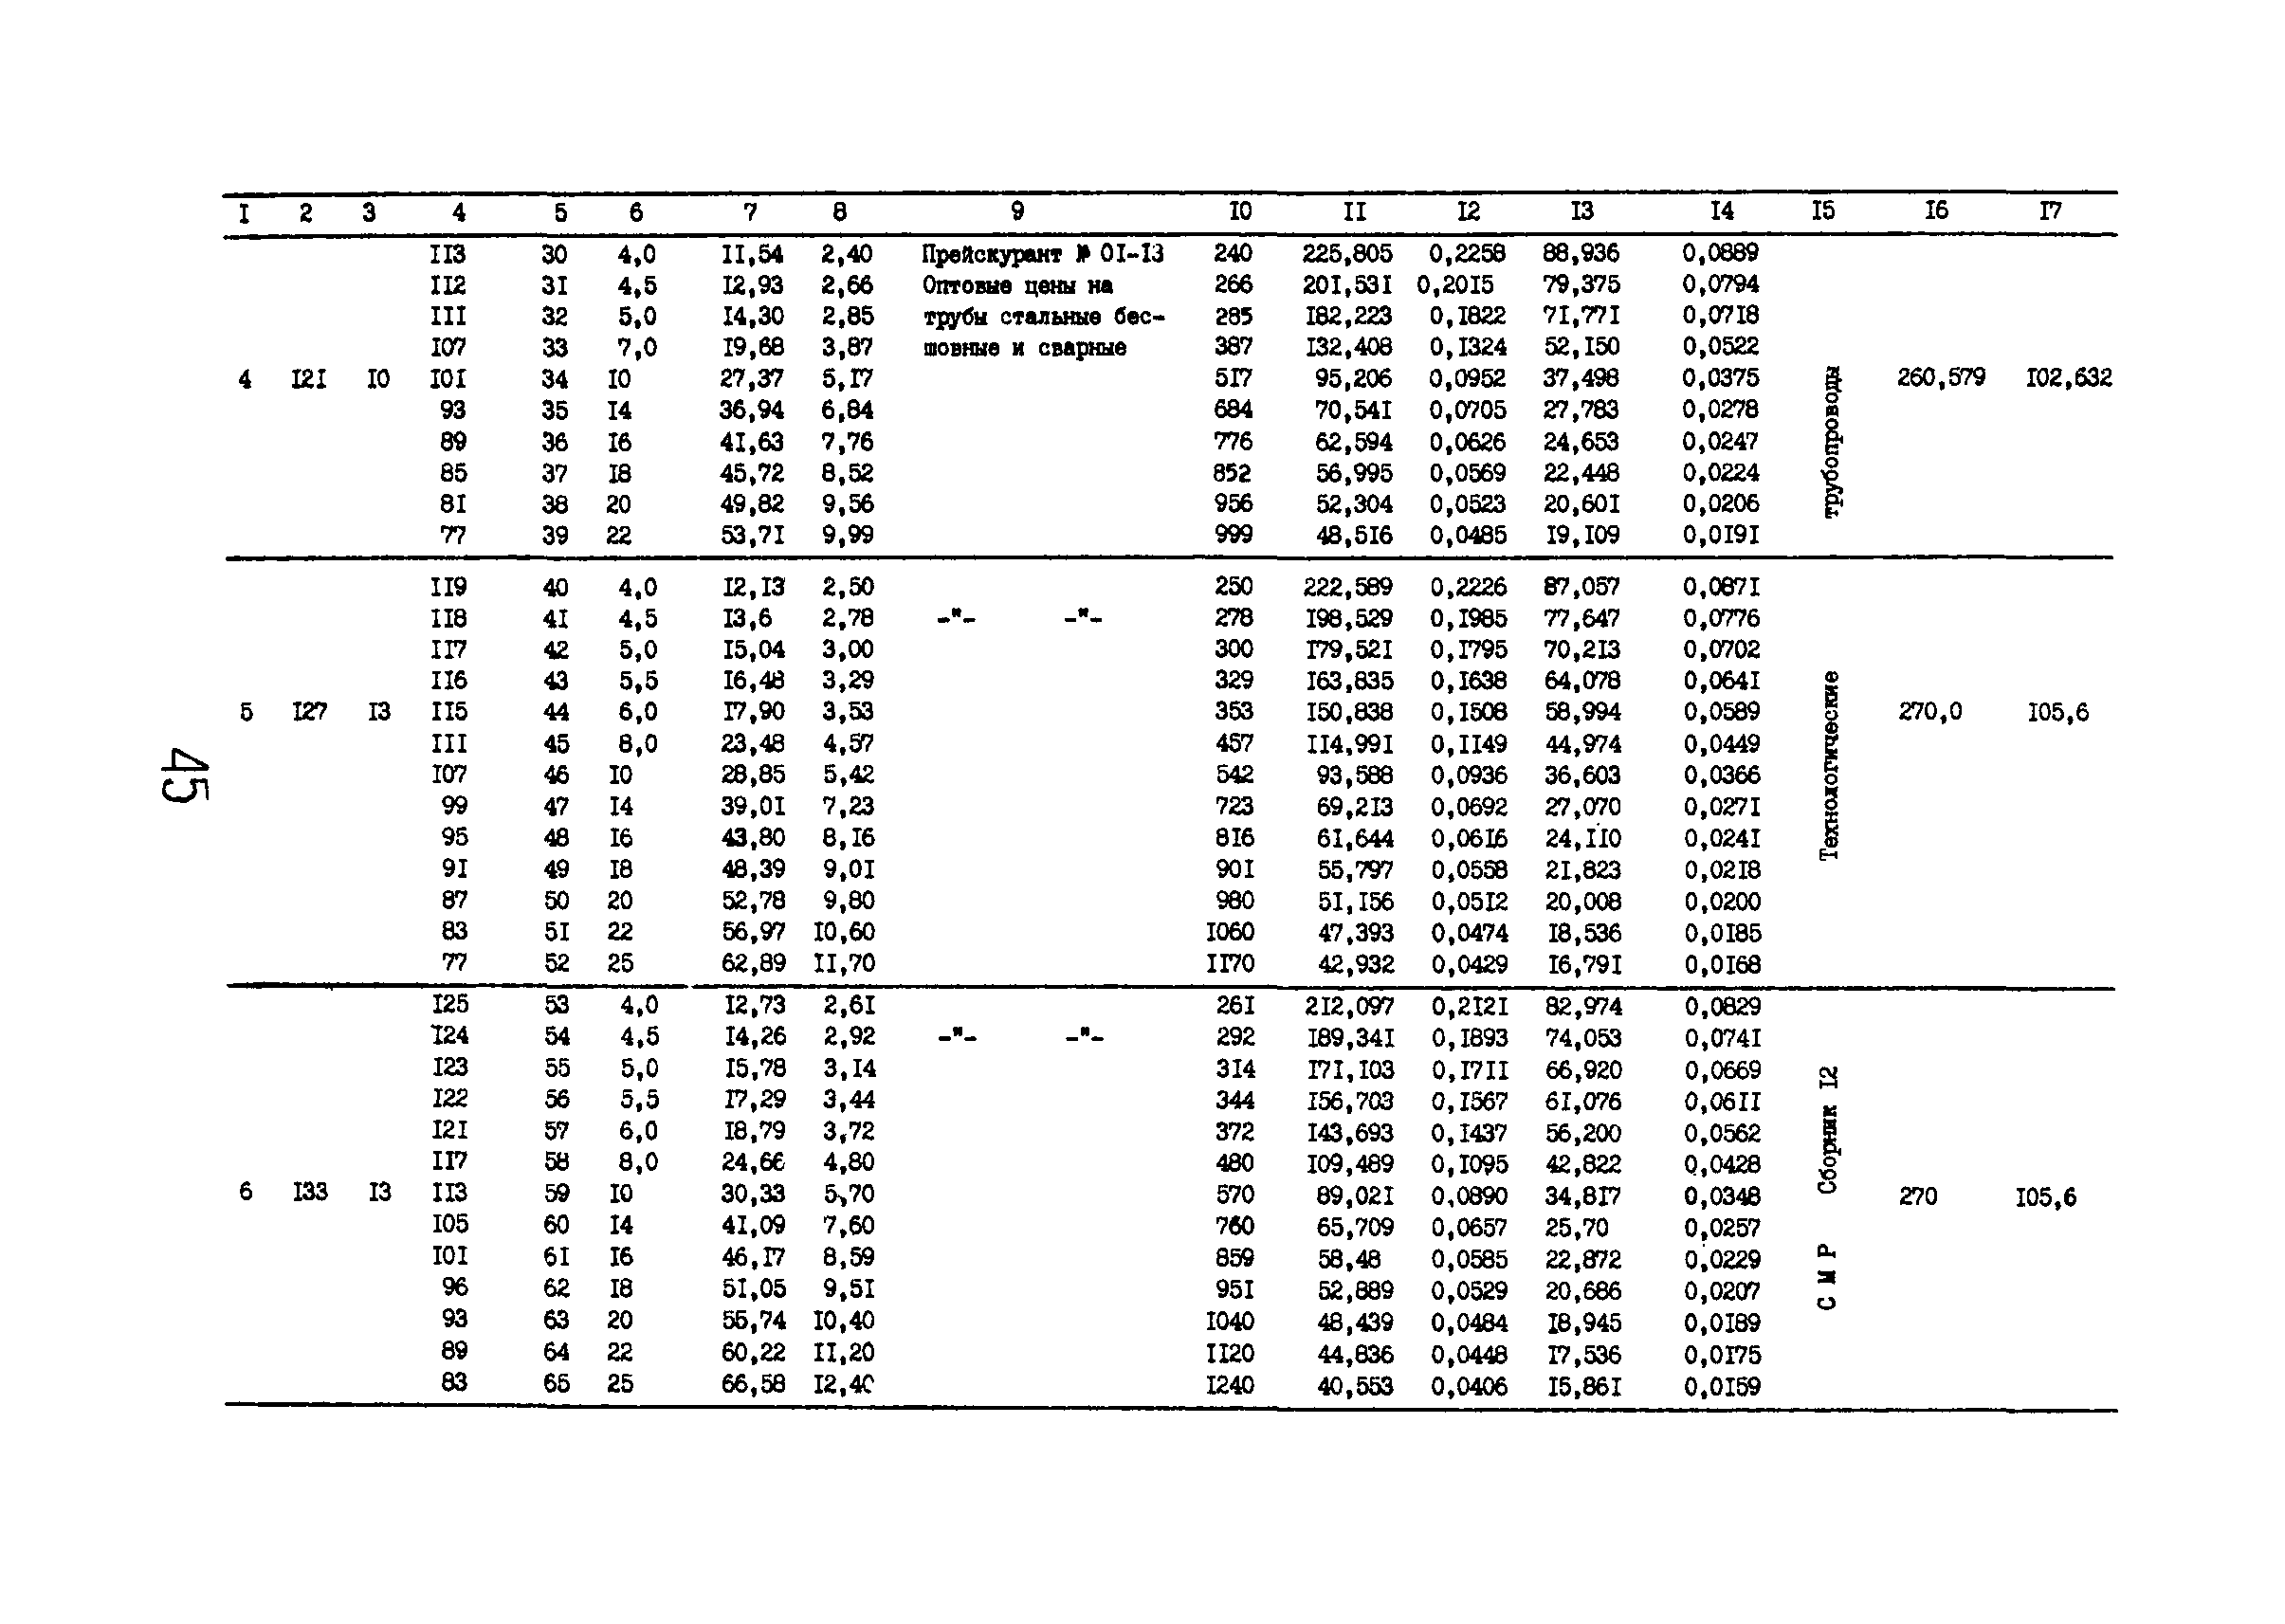 РД 12.13.029-85